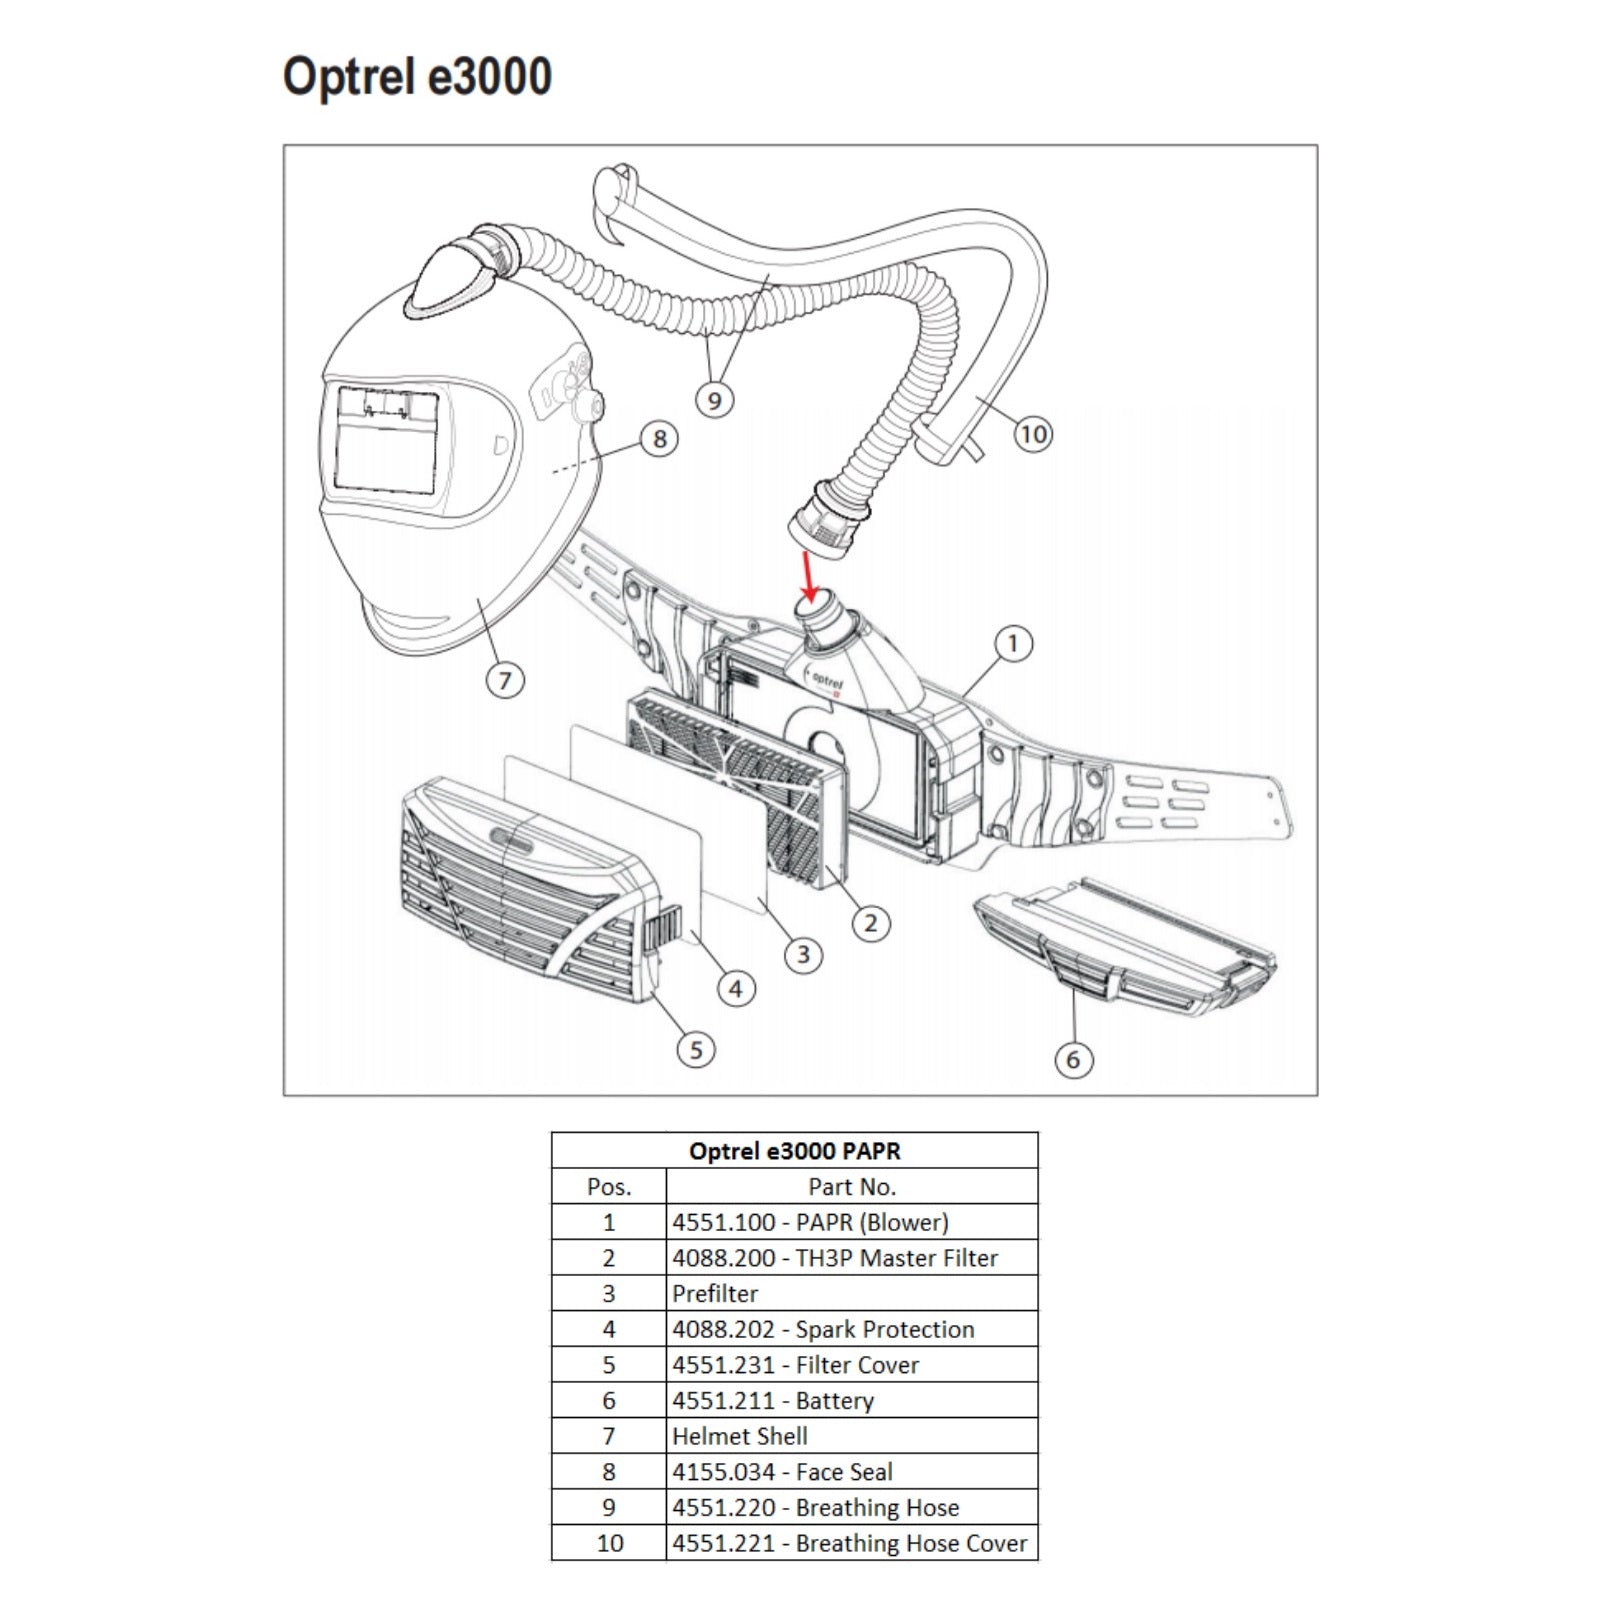 Optrel e3000 PAPR Face Seal (4155.034)